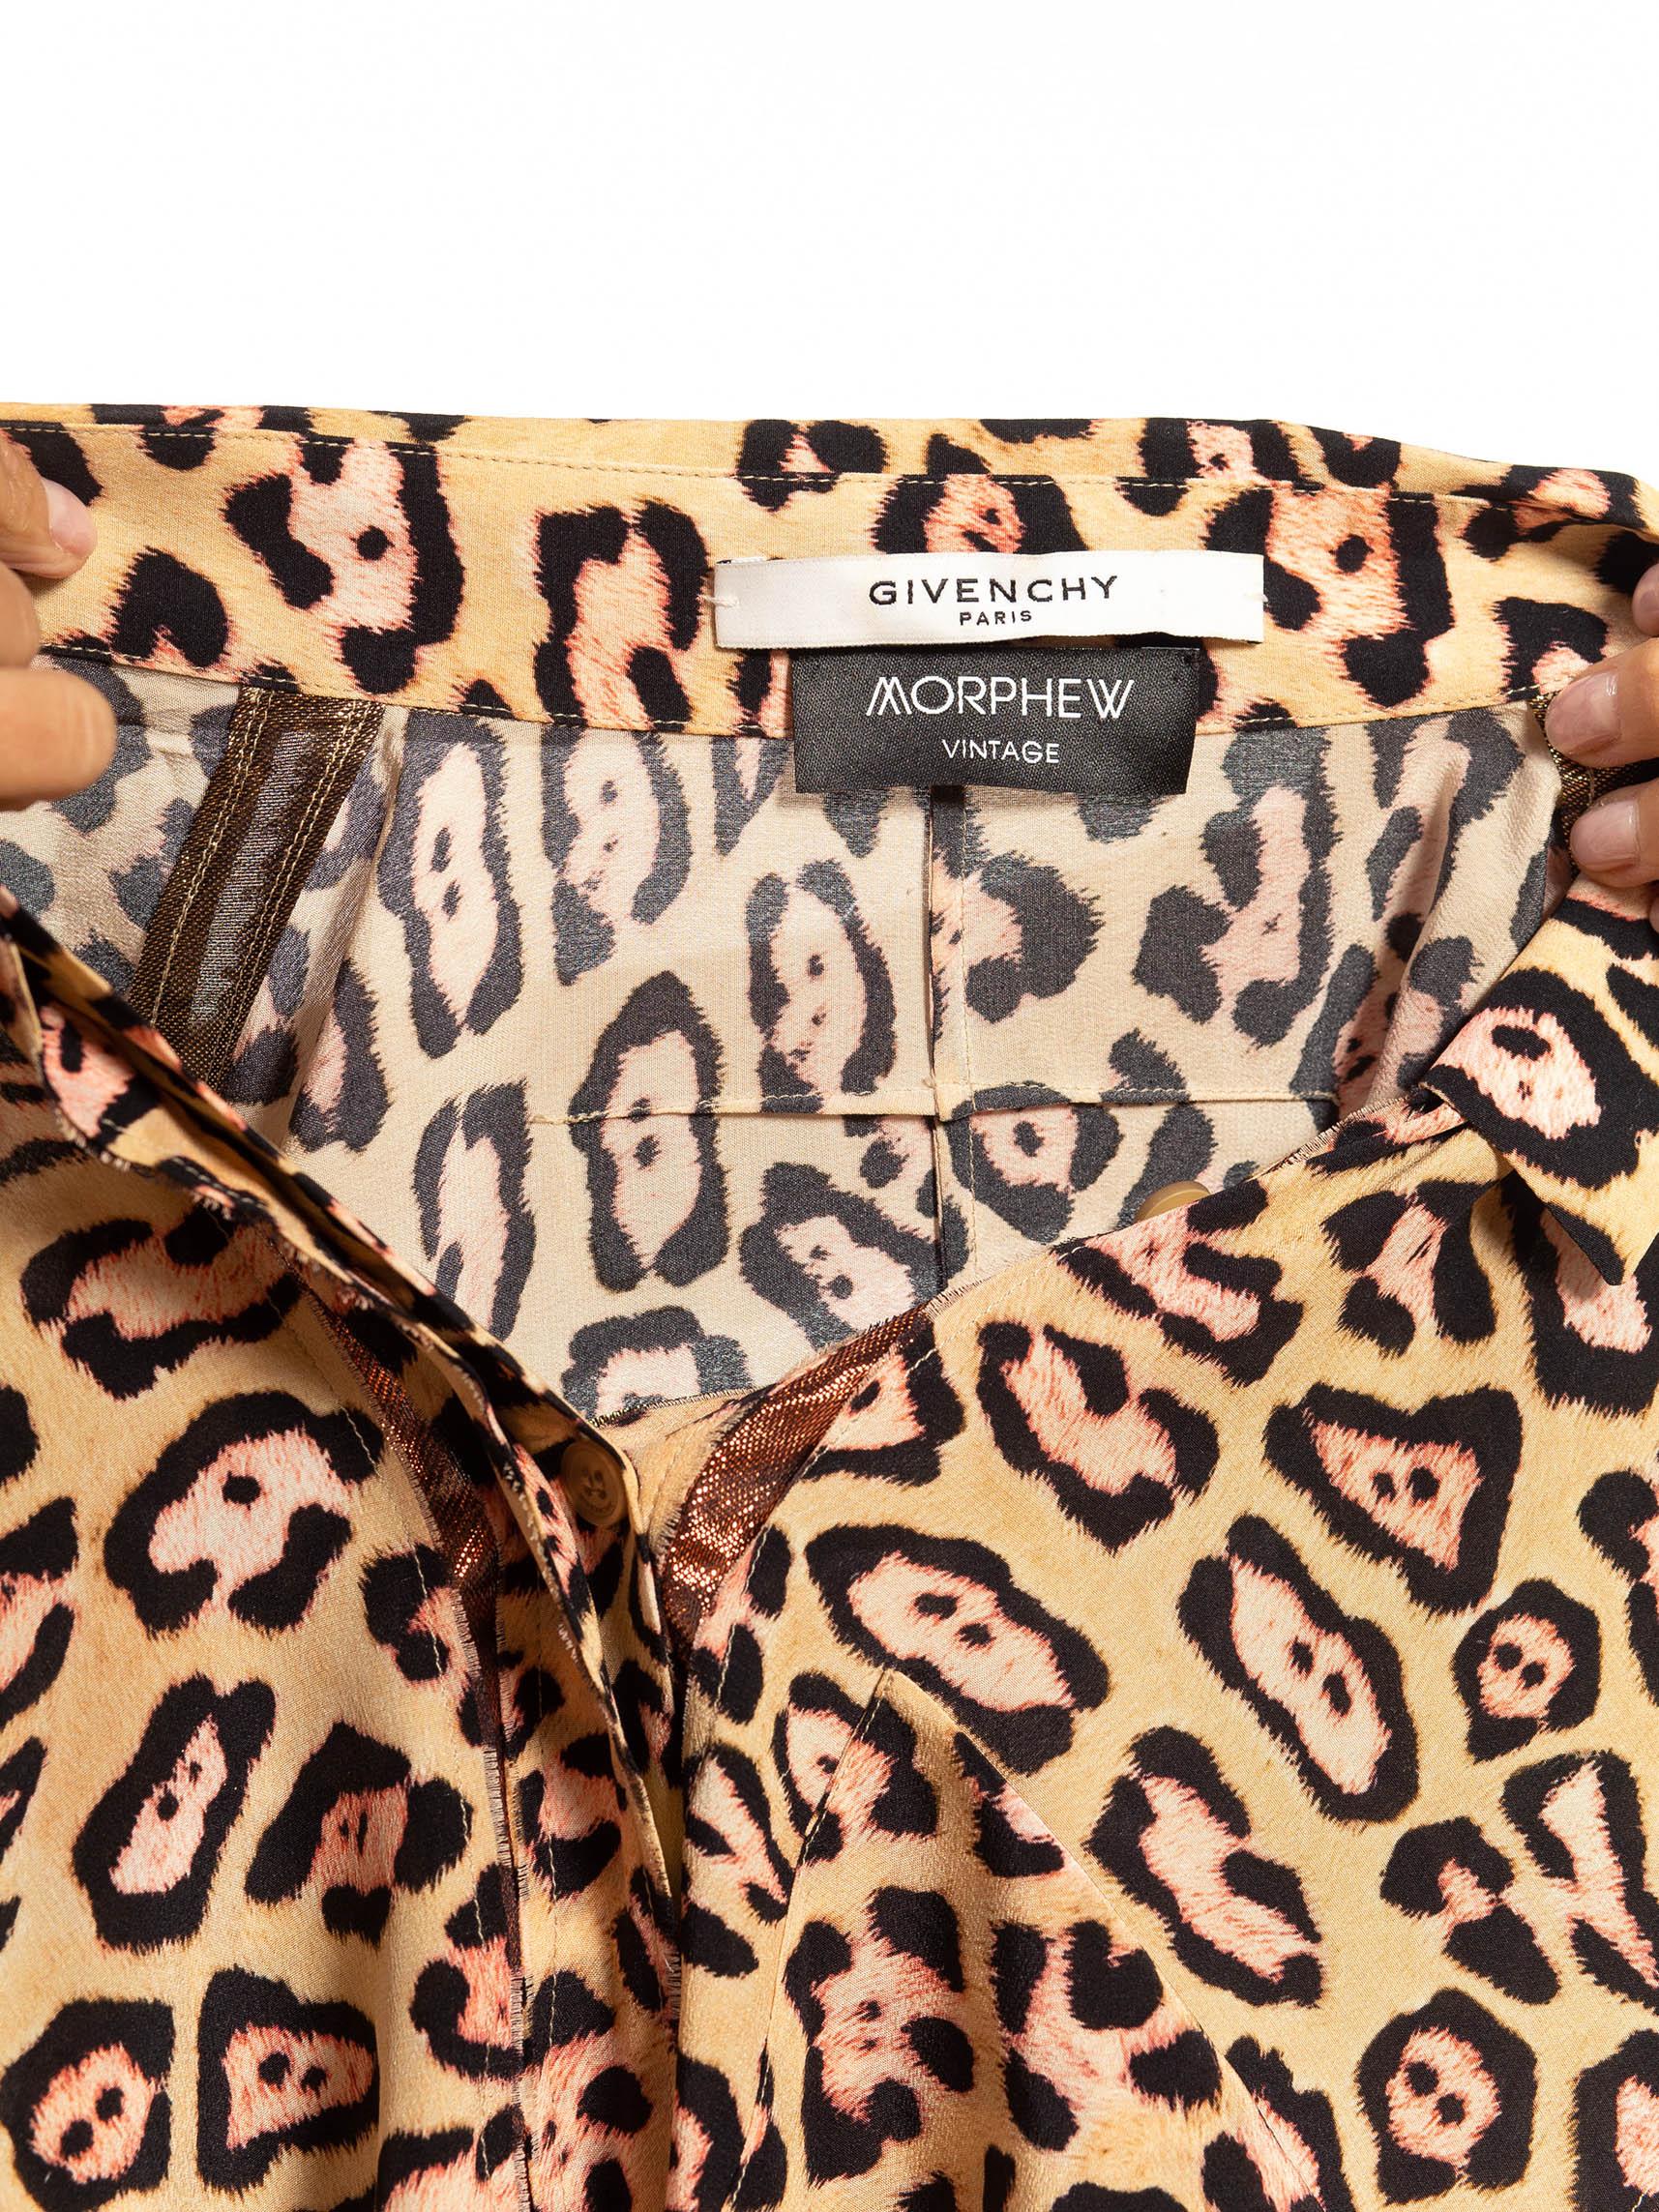 Chemise GIVENCHY en soie imprimée léopard beige et marron avec bordures métalliques, années 2010 en vente 5